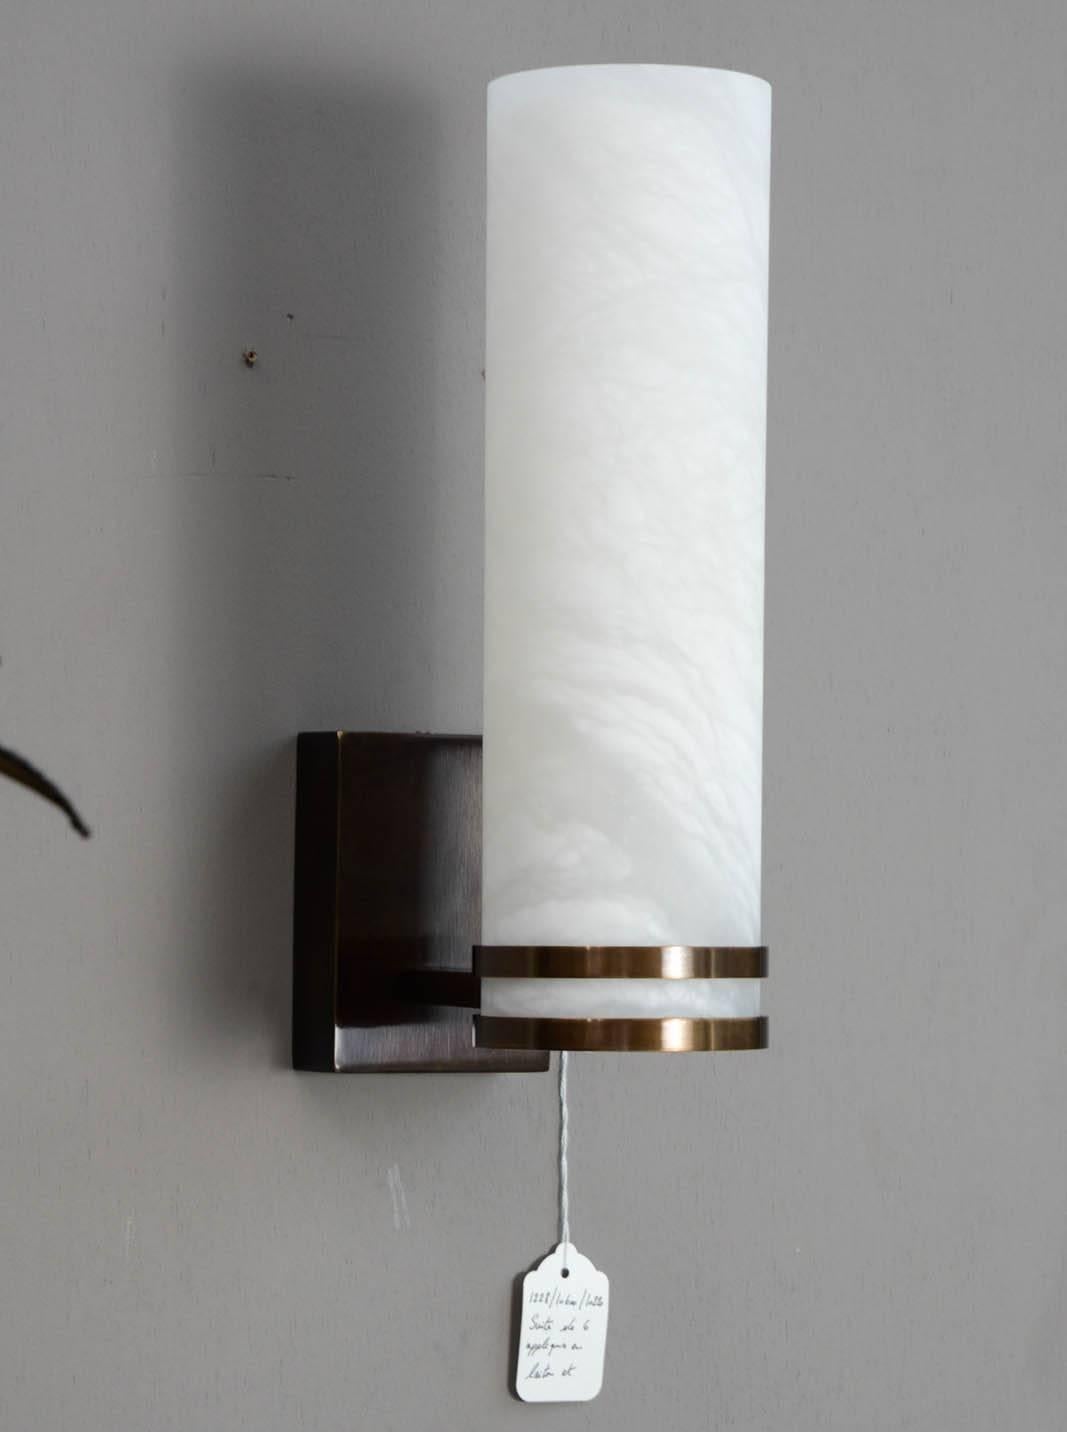 Nouveau design des luminaires Glustin, applique en albâtre dans une structure en laiton patiné.